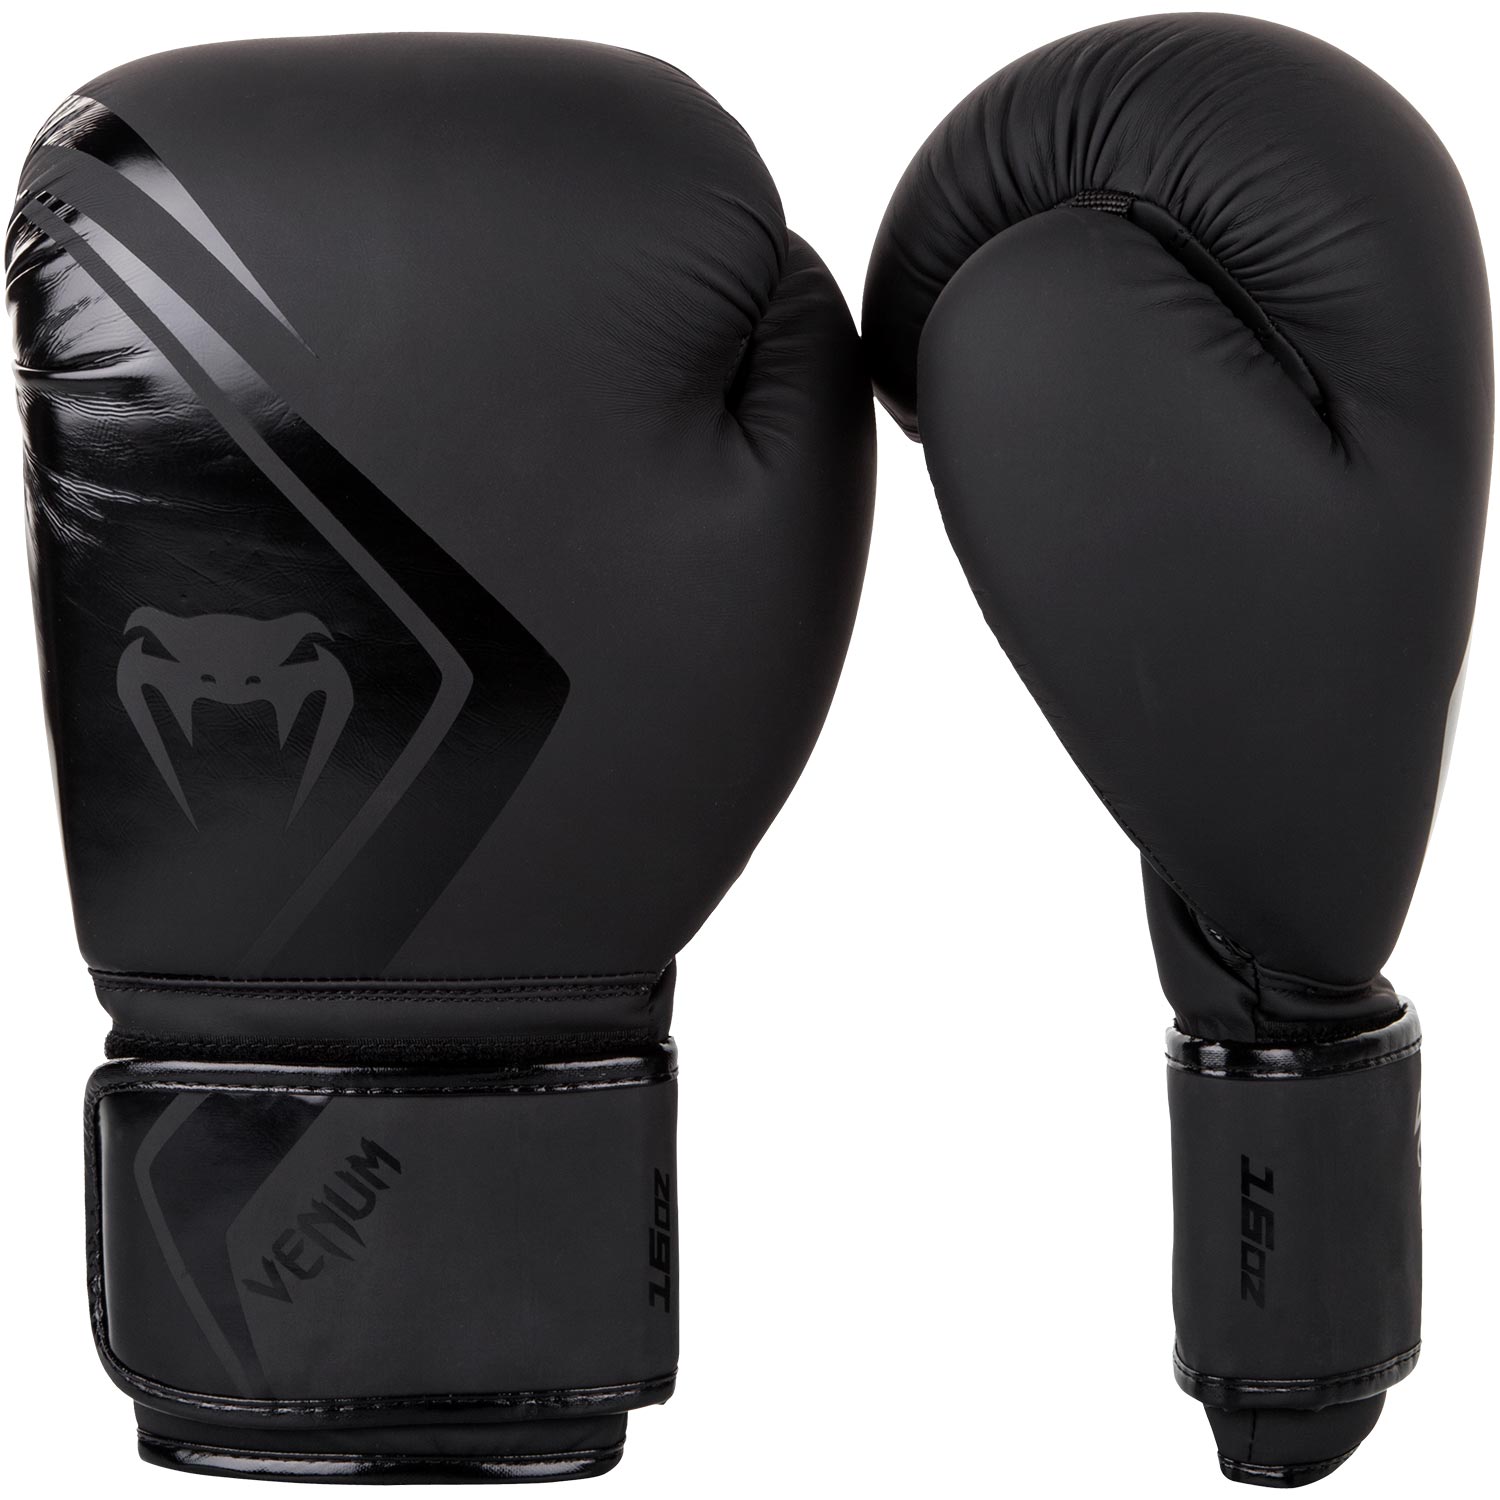 Boxerské rukavice Contender 2.0 černé VENUM vel. 14 oz